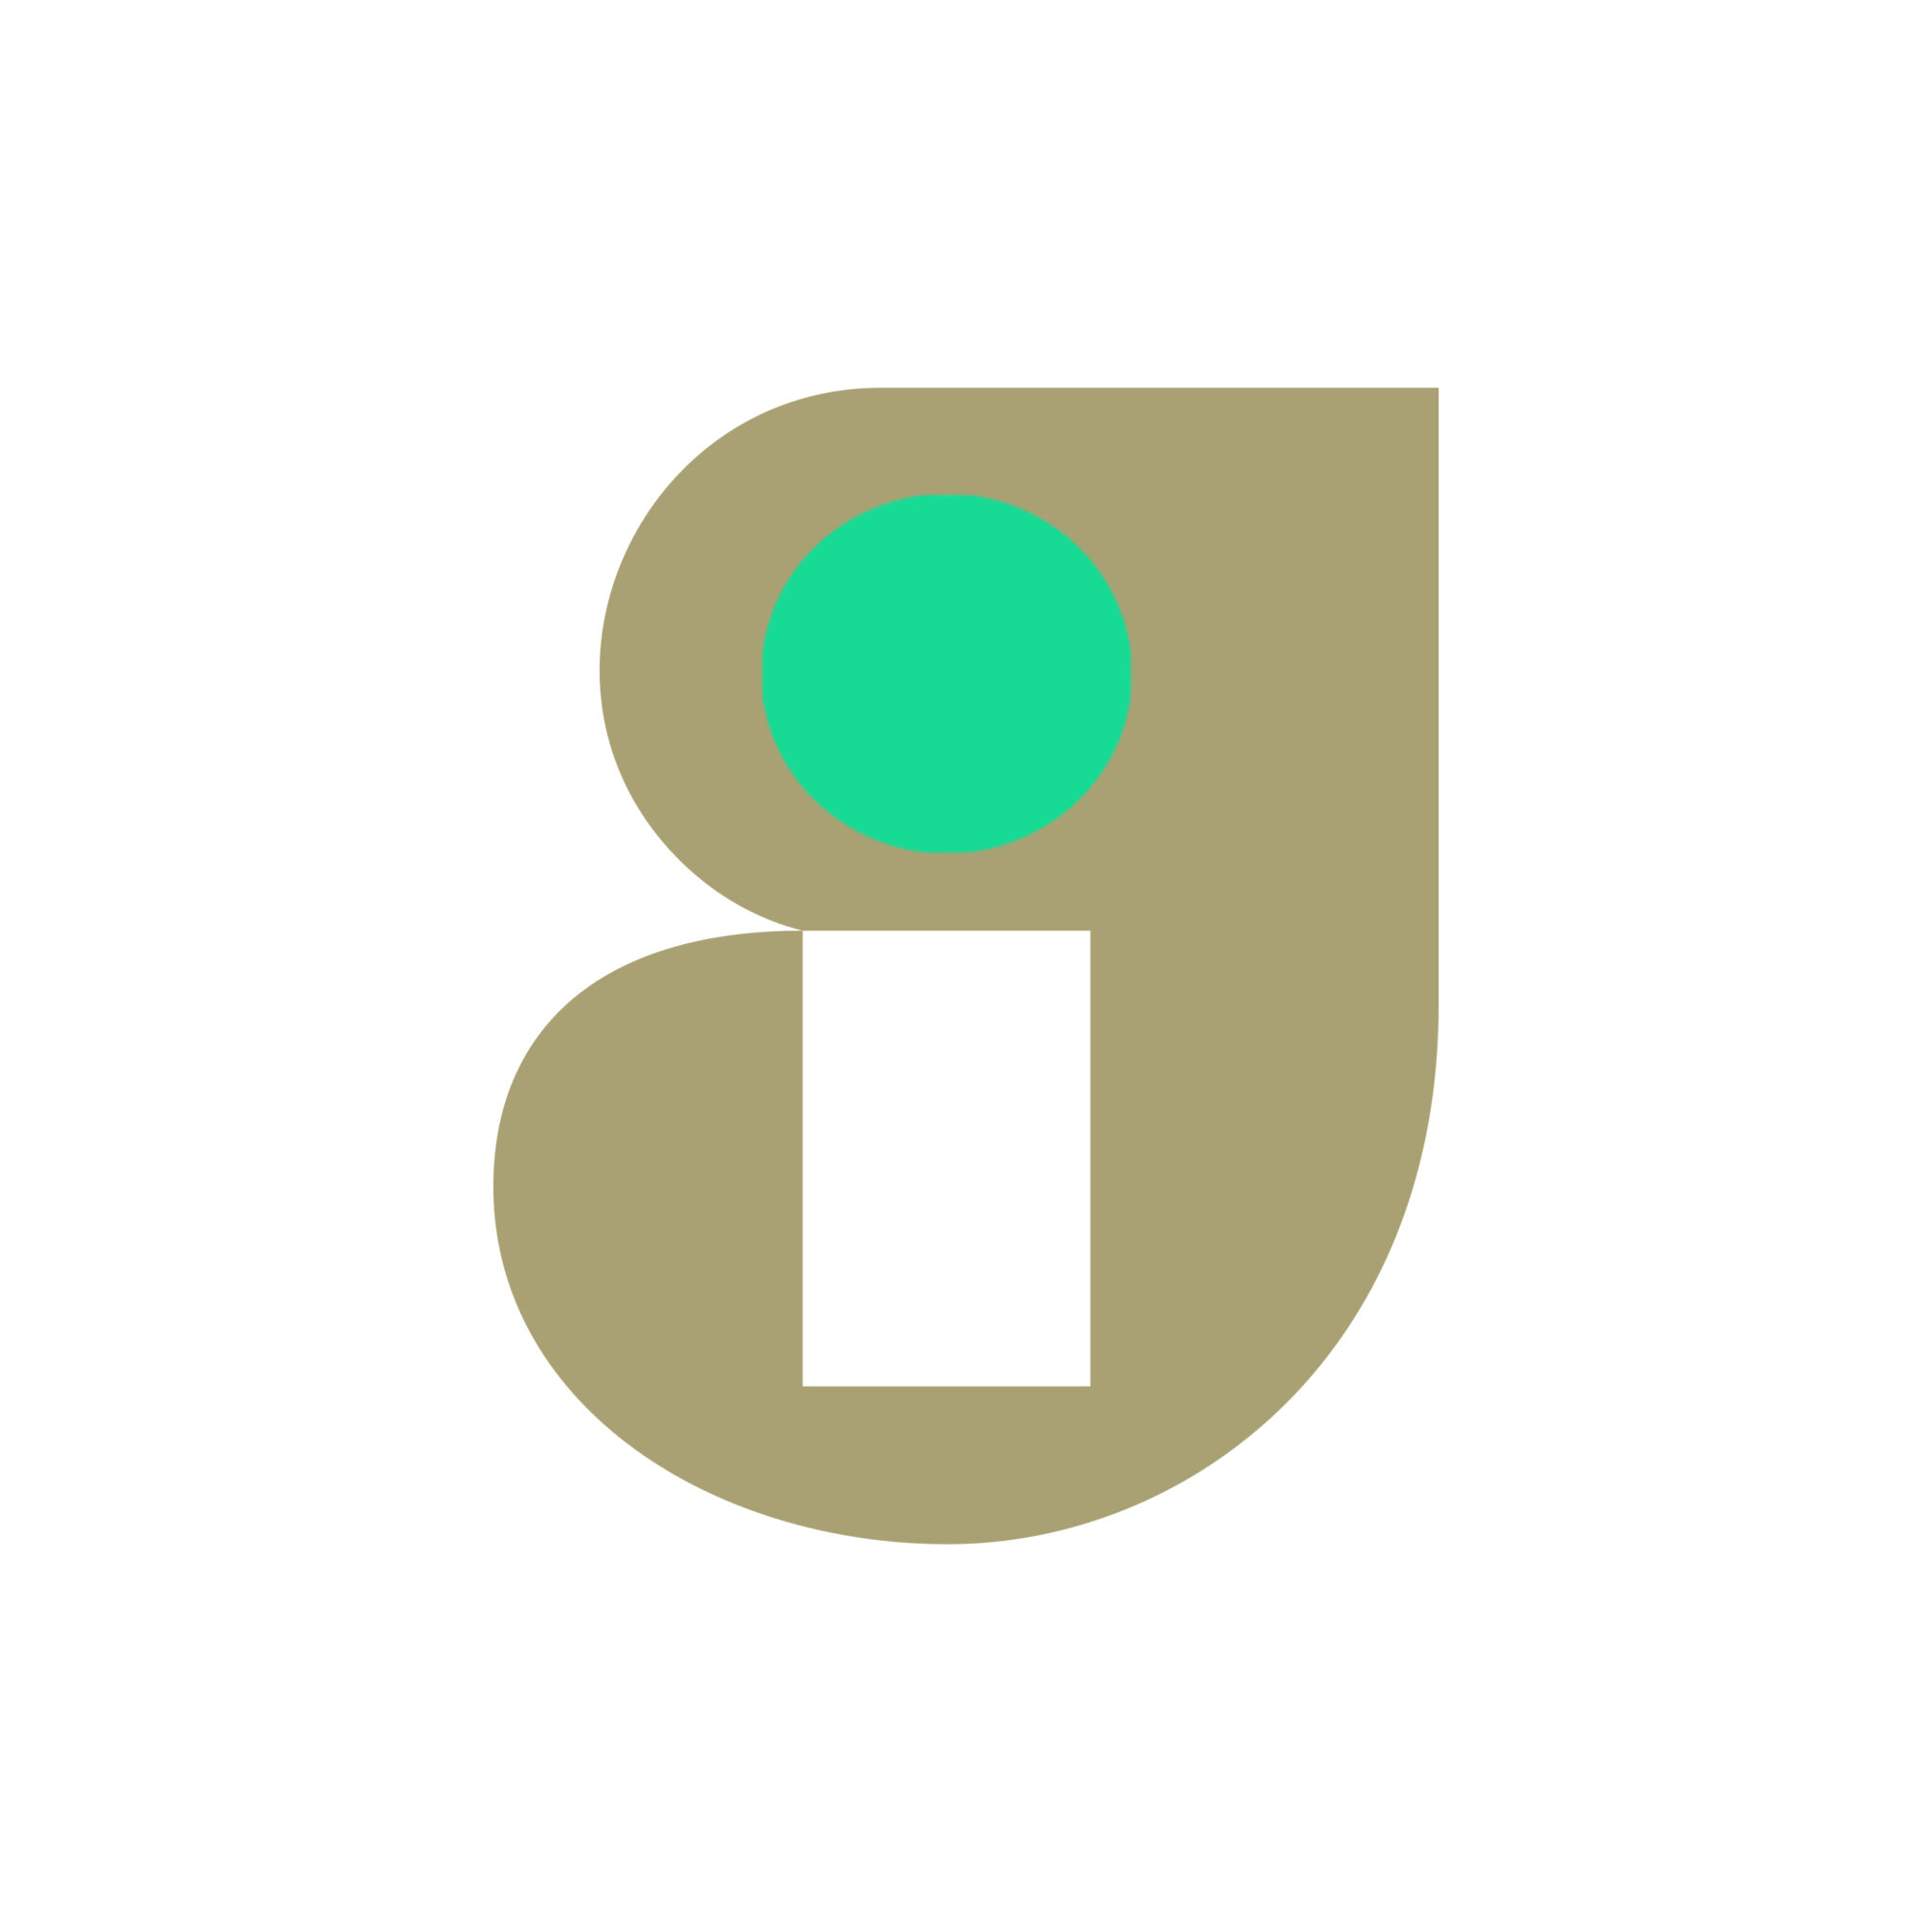 GI logo on white with green dot